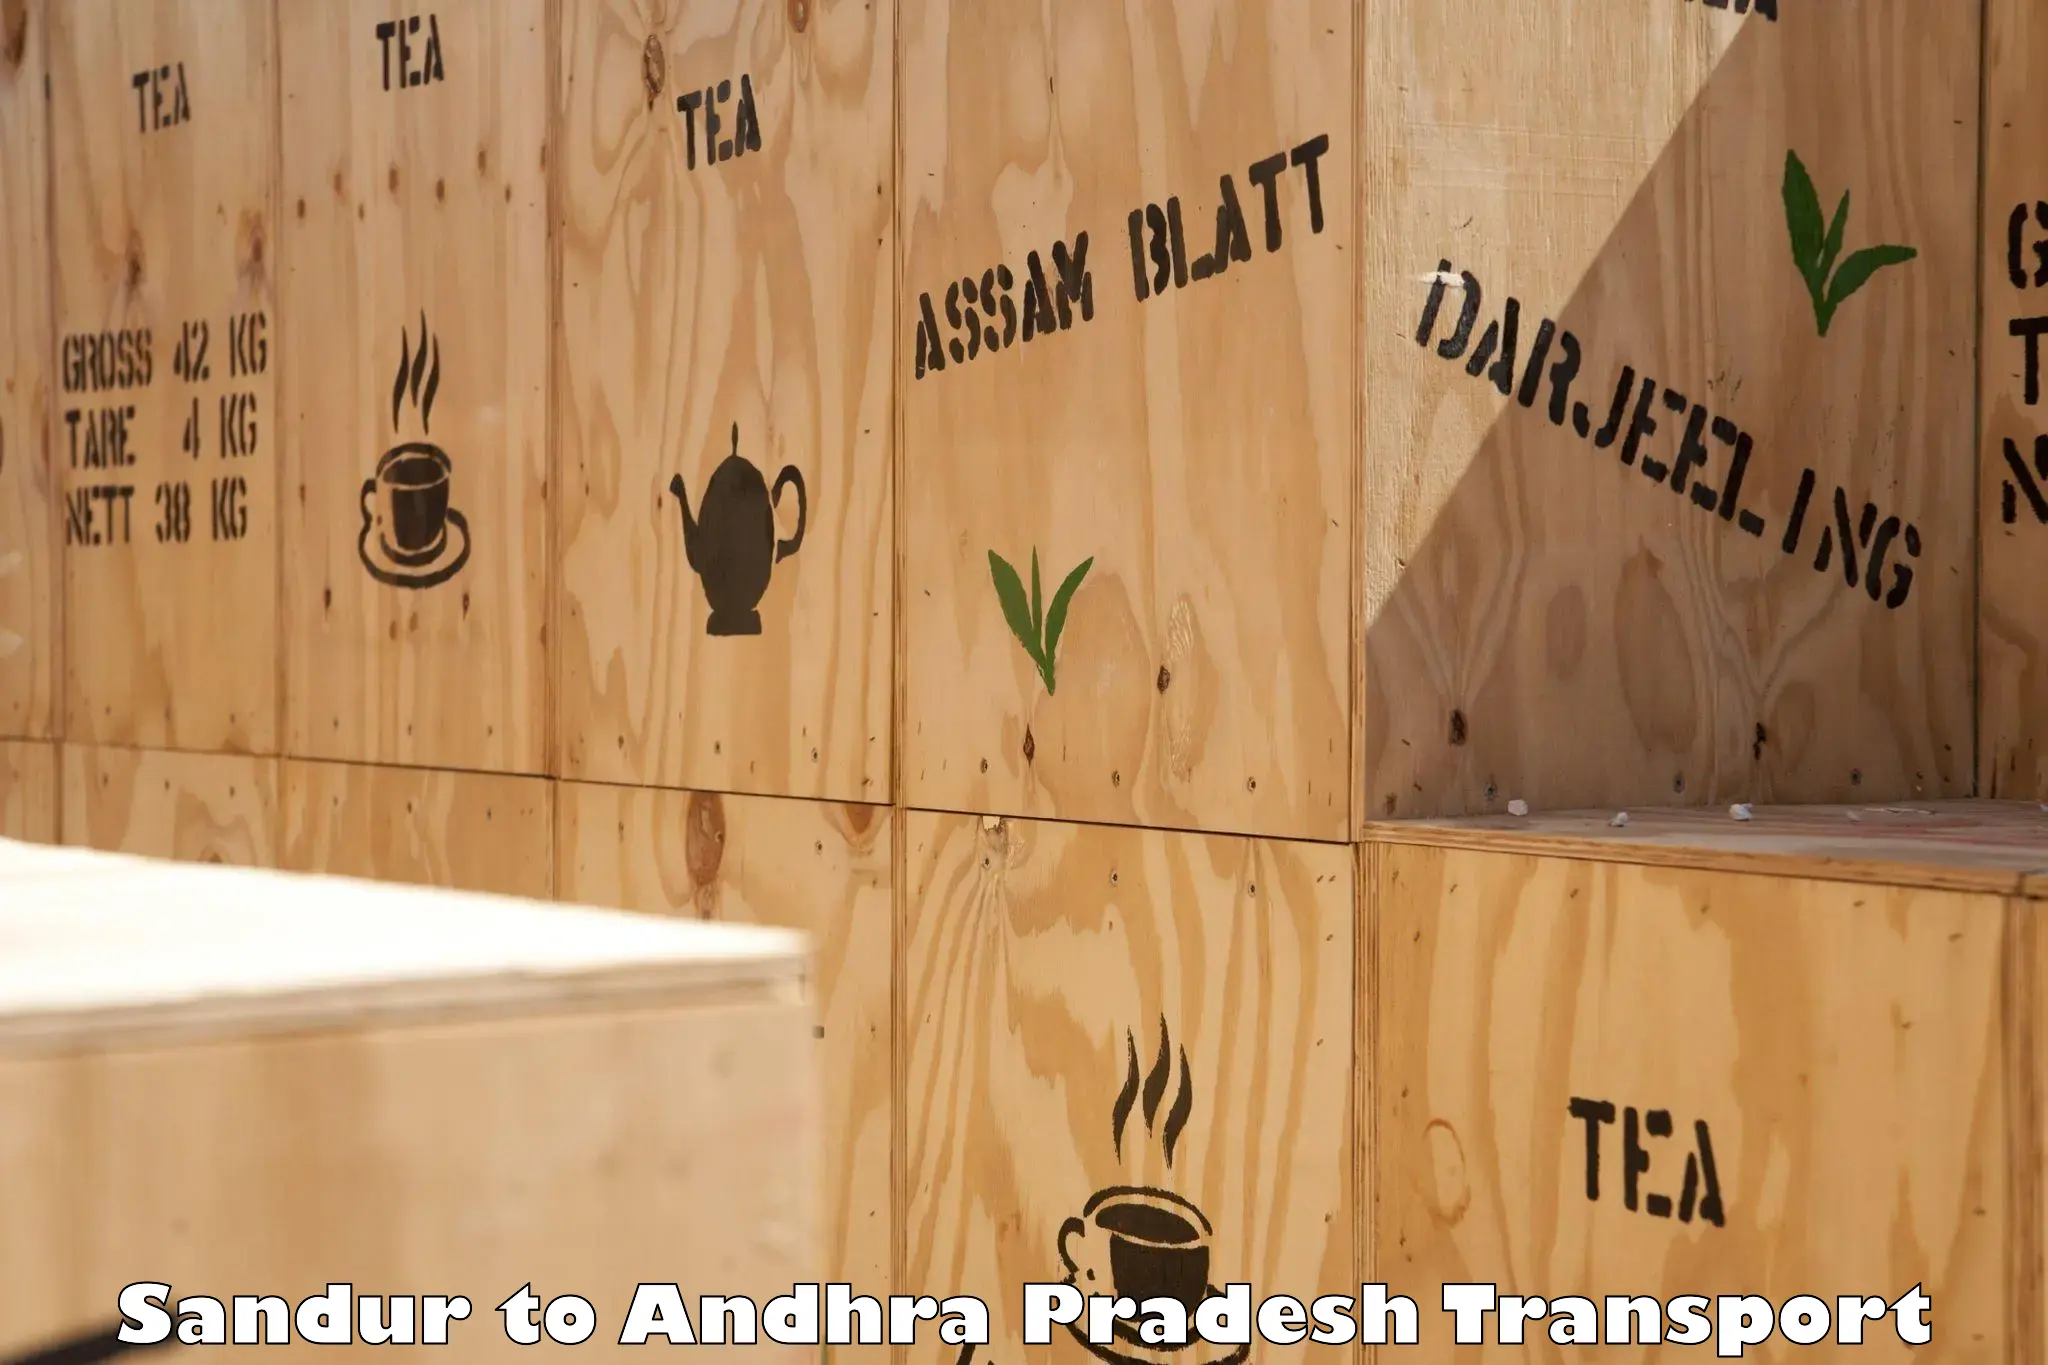 Furniture transport service Sandur to Dharmavaram